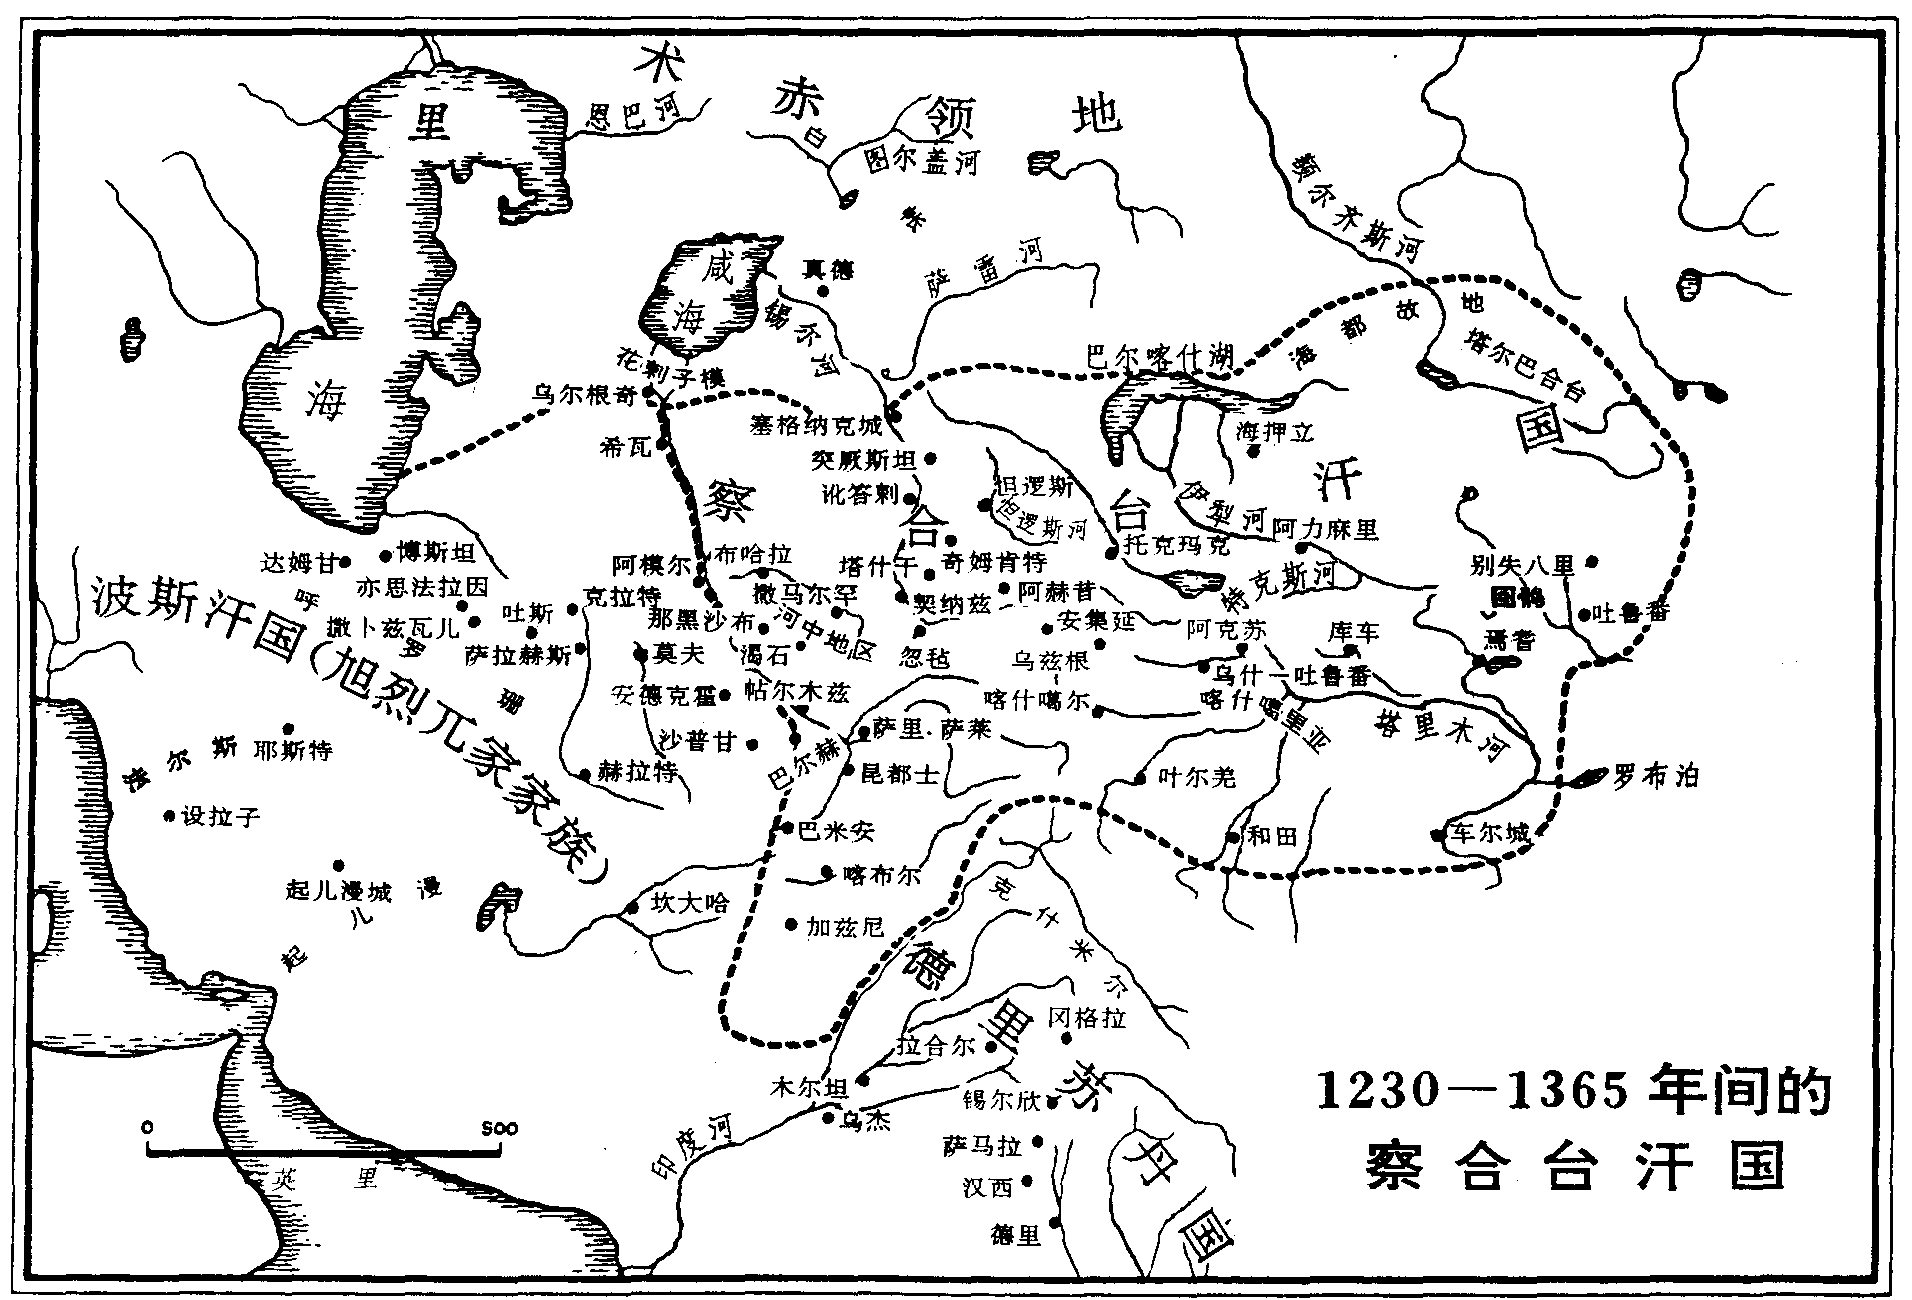 1230-1365年間的察合台汗國